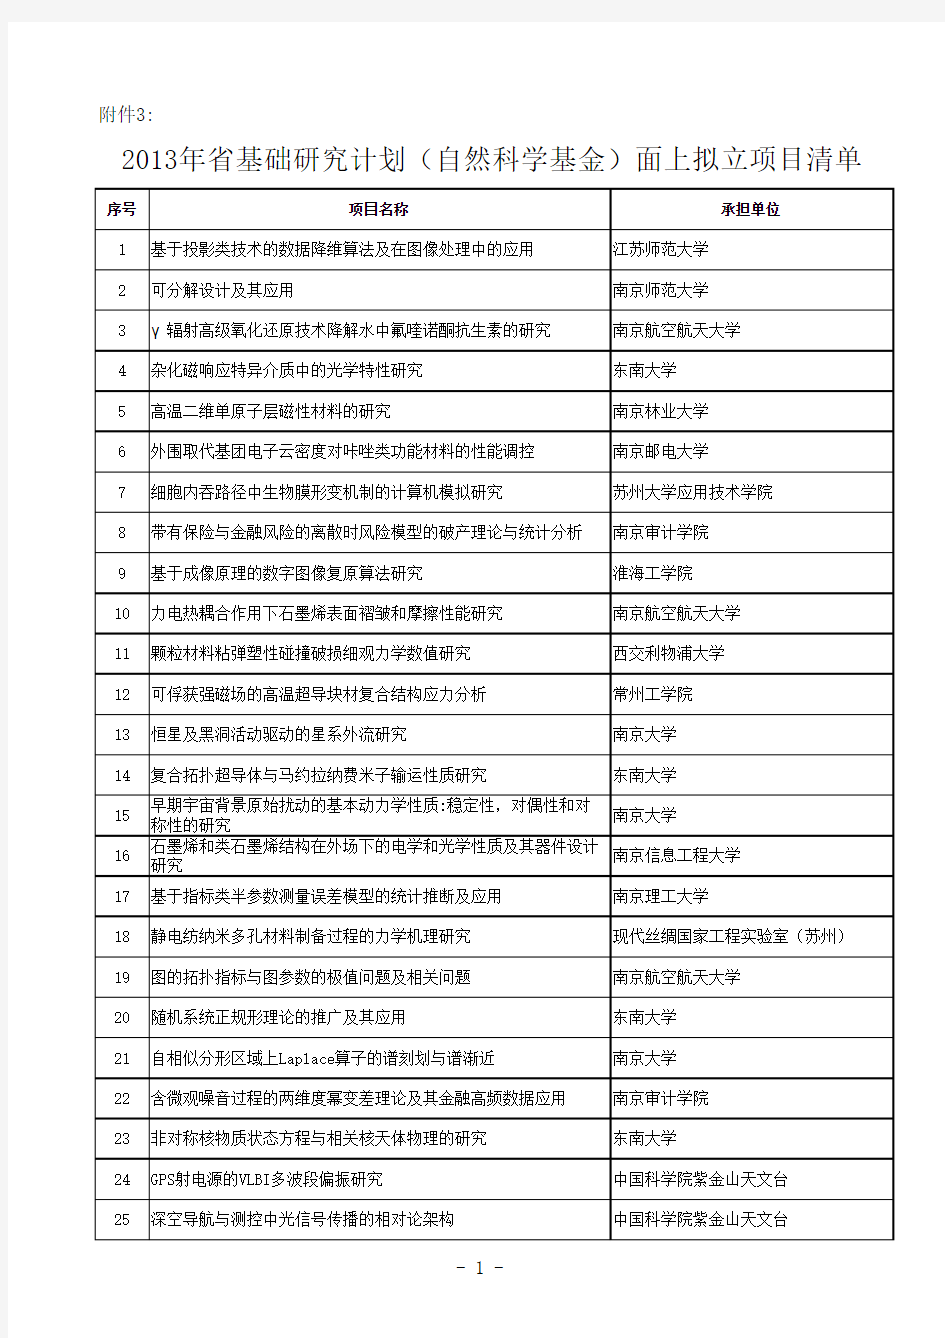 2013年江苏省基础研究计划(自然科学基金)面上拟立项目清单